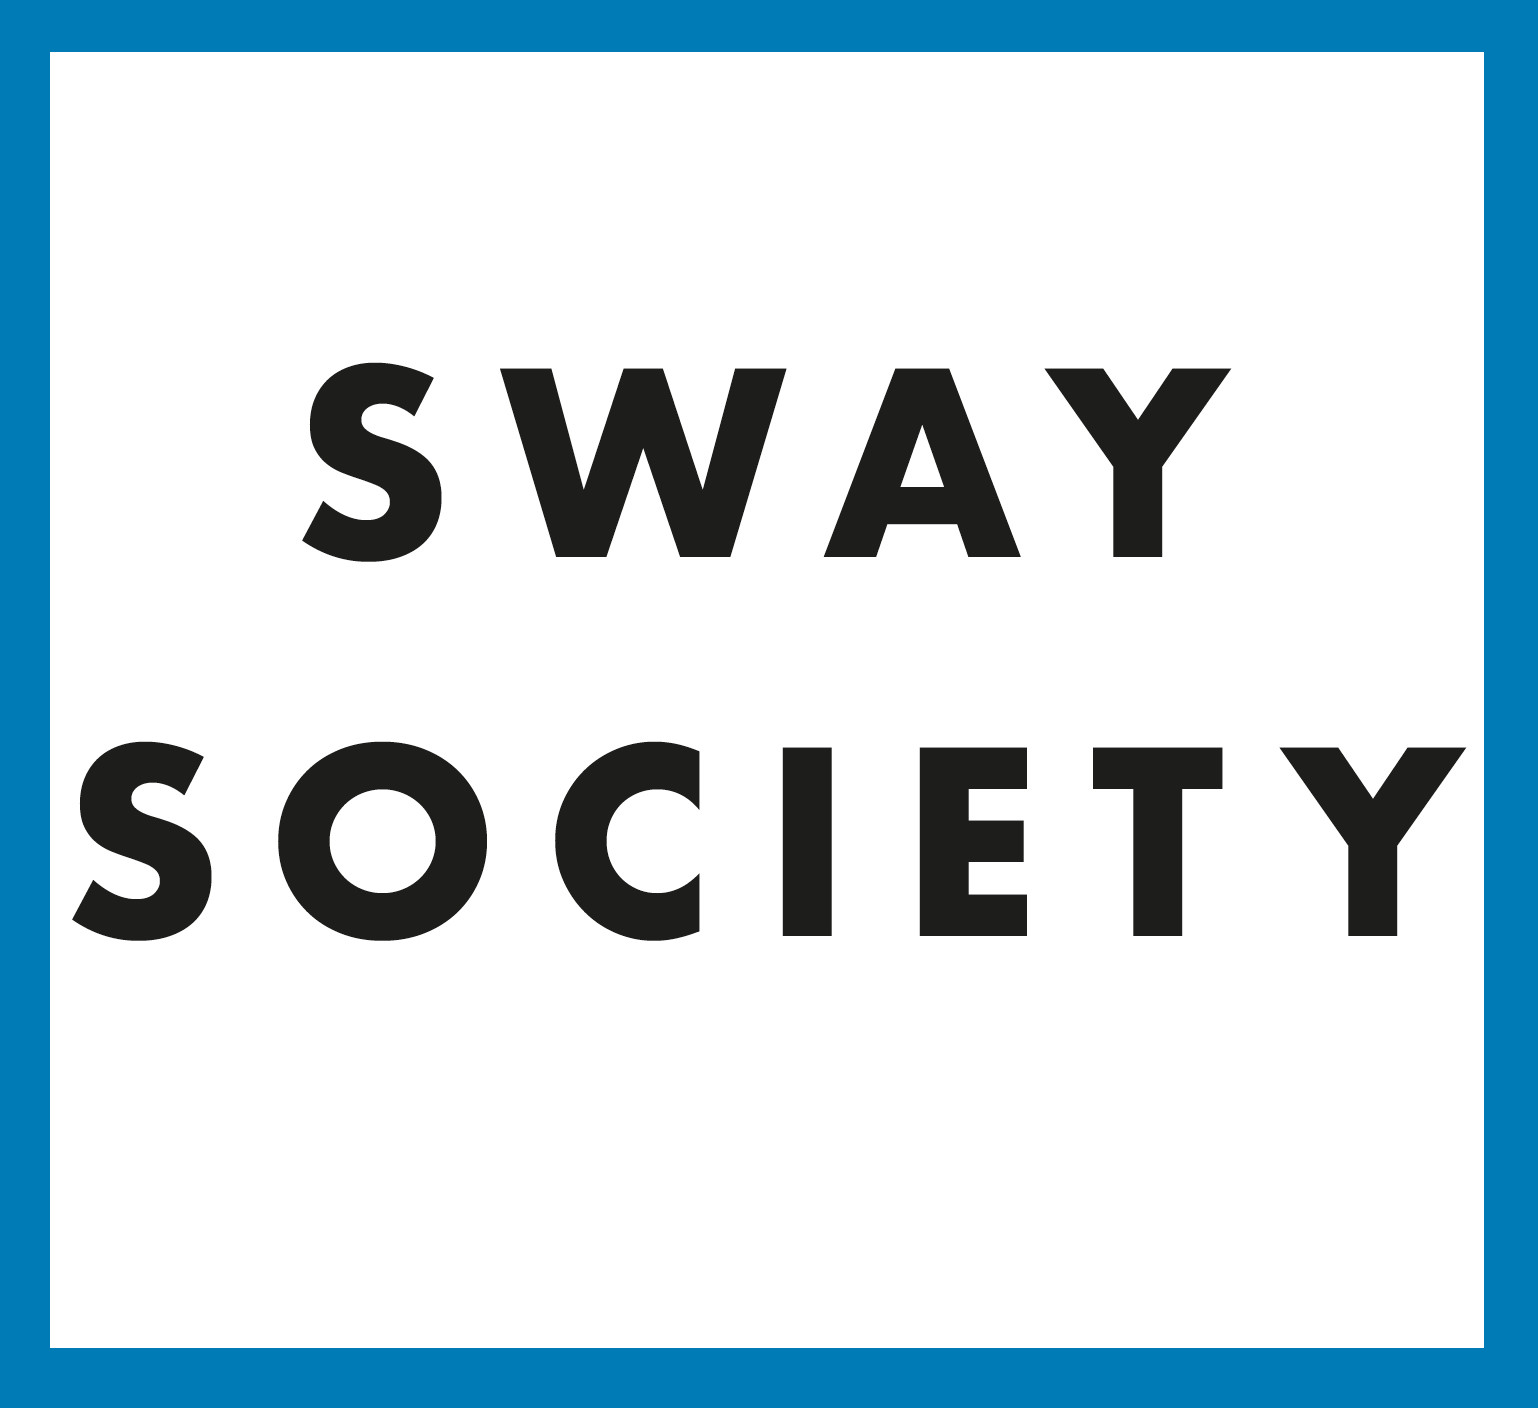 Sway Society